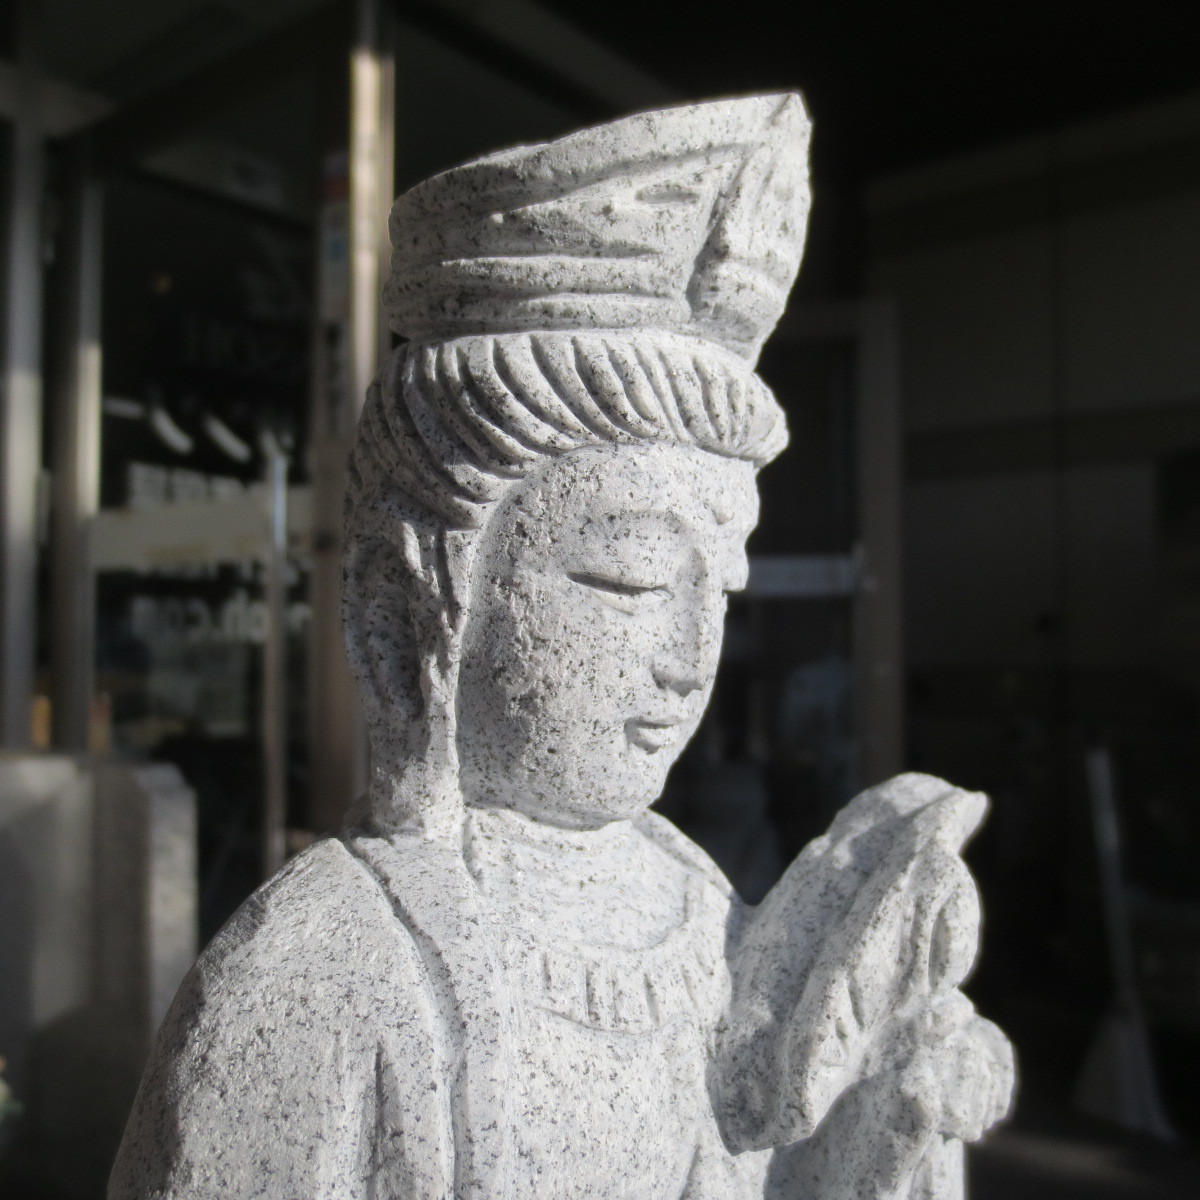 観音菩薩像 1.0尺 総高３９ｃｍ Guan Yin 観音像 聖観音 観音様 御影石 手作り 観音様 観音菩薩 石像 彫刻品 御影石